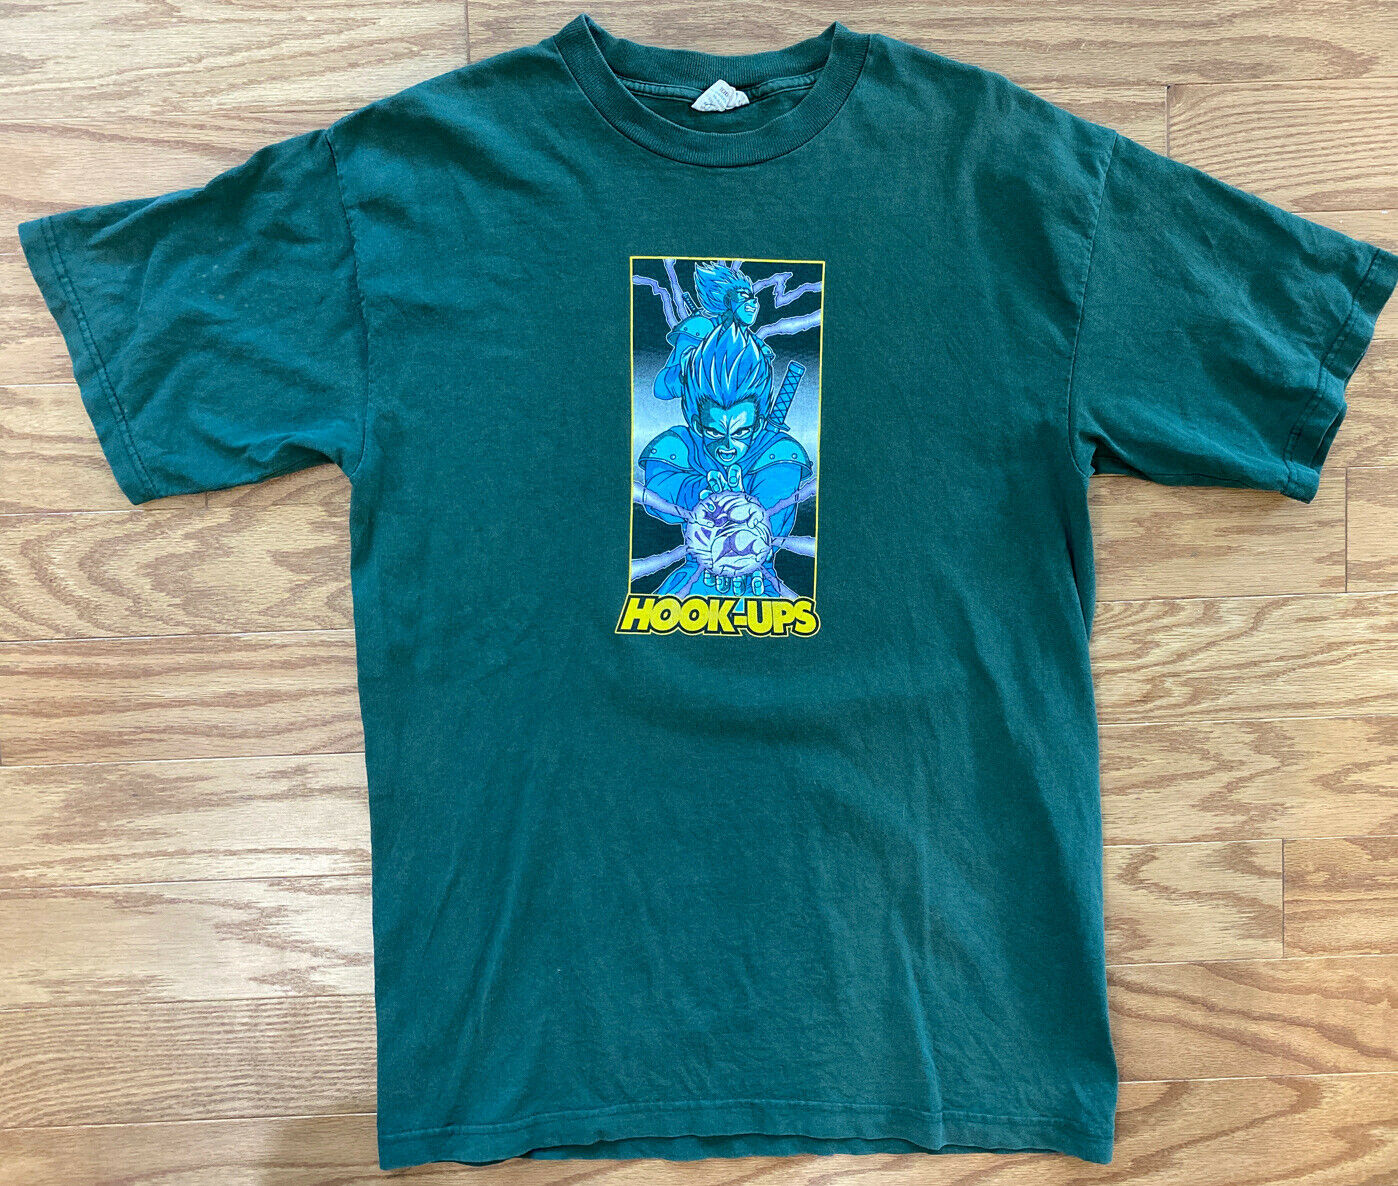 Vintage VTG 1990s Hook-Ups Skateboards Dragon Ball Z Shirt Large